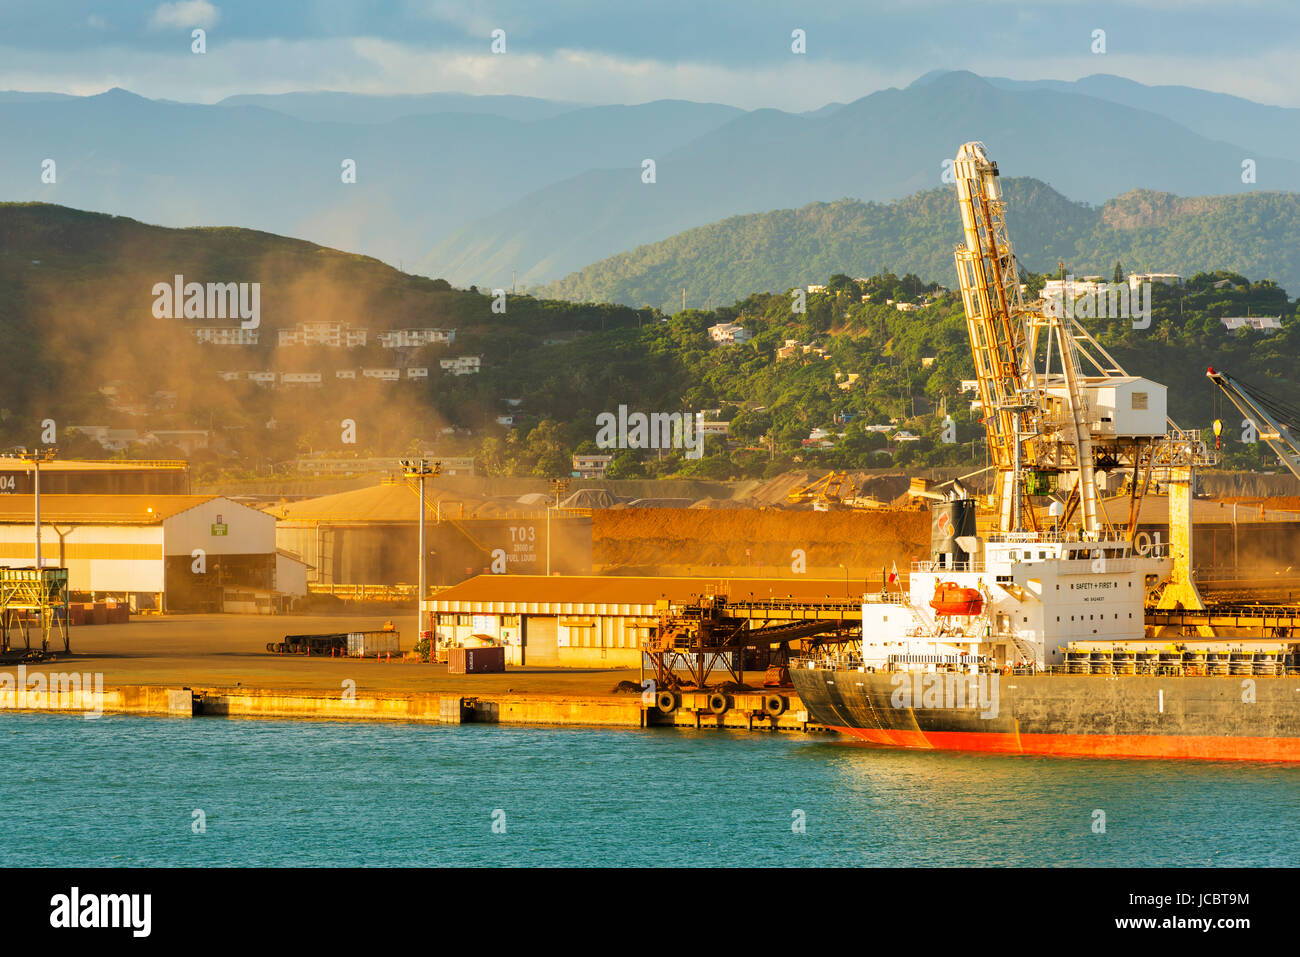 NOUMEA, Neukaledonien - APRIL 2016: Nickel, Bergbau und Verhüttung Operationen im Hafen. Neukaledonien entfallen rund 10 % der weltweit bekannten ni Stockfoto